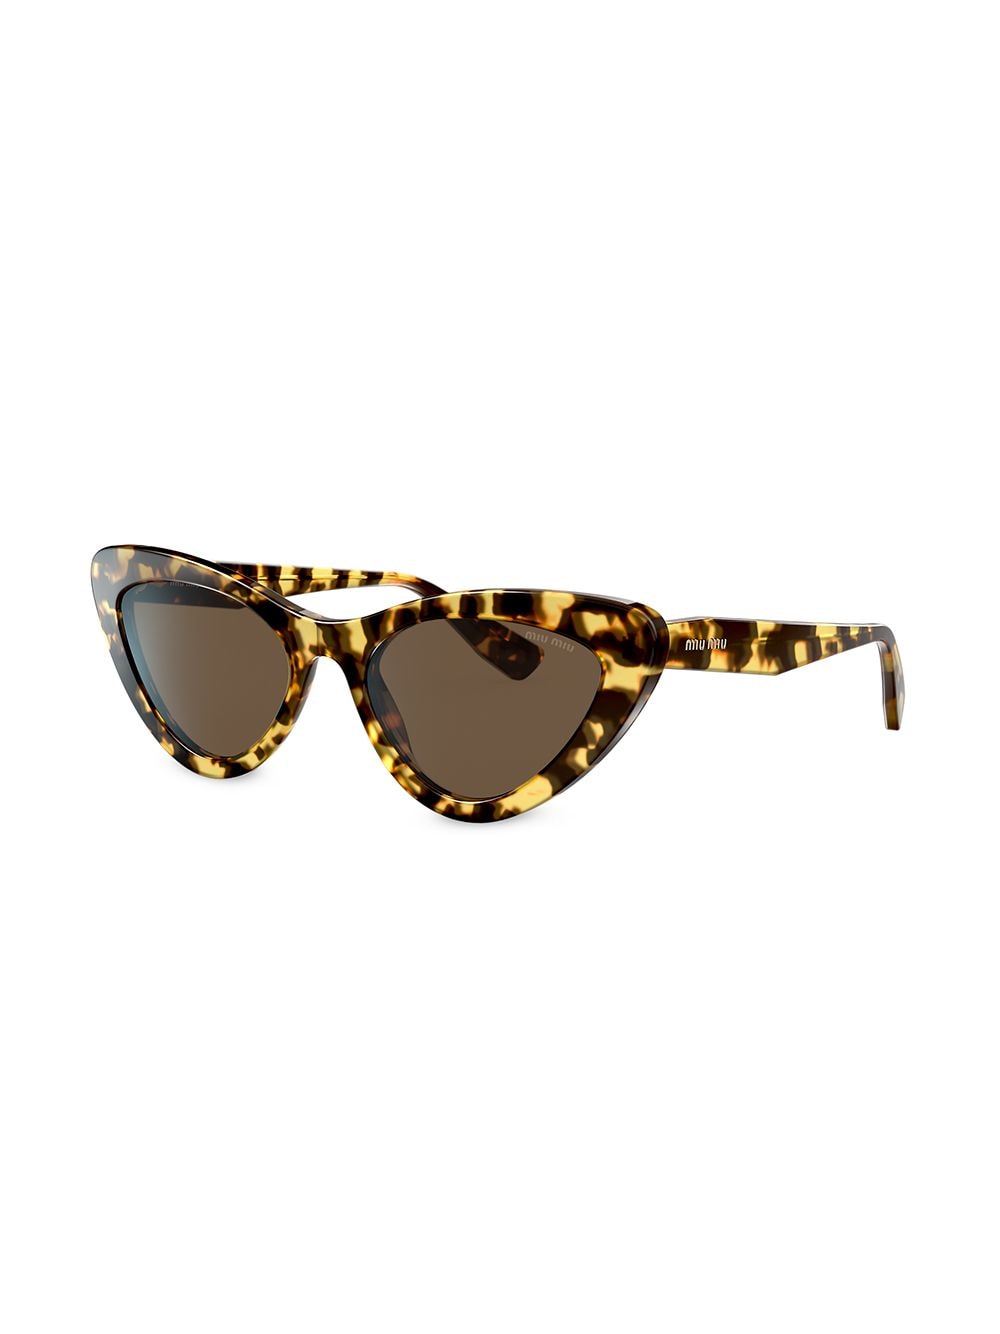 фото Miu miu eyewear солнцезащитные очки в оправе 'кошачий глаз' черепаховой расцветки